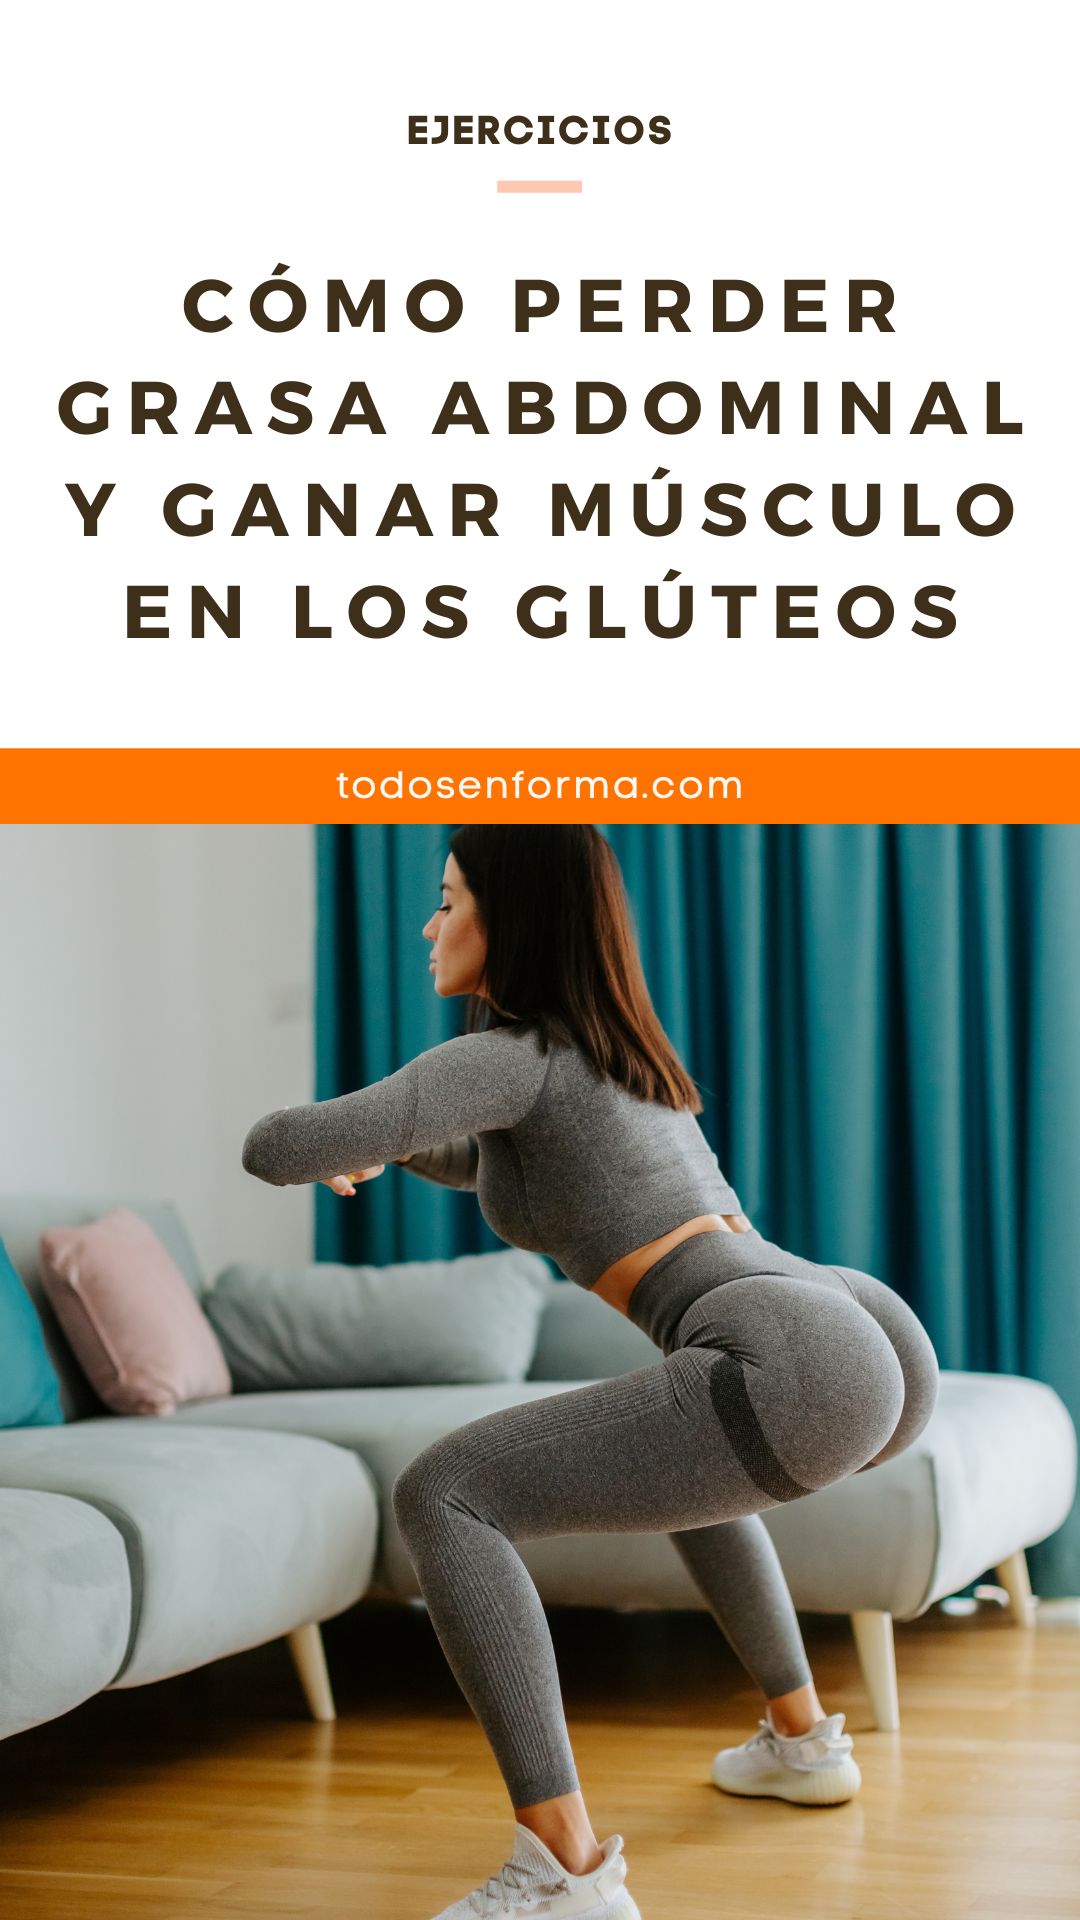 Cómo perder grasa abdominal y ganar músculo en los glúteos